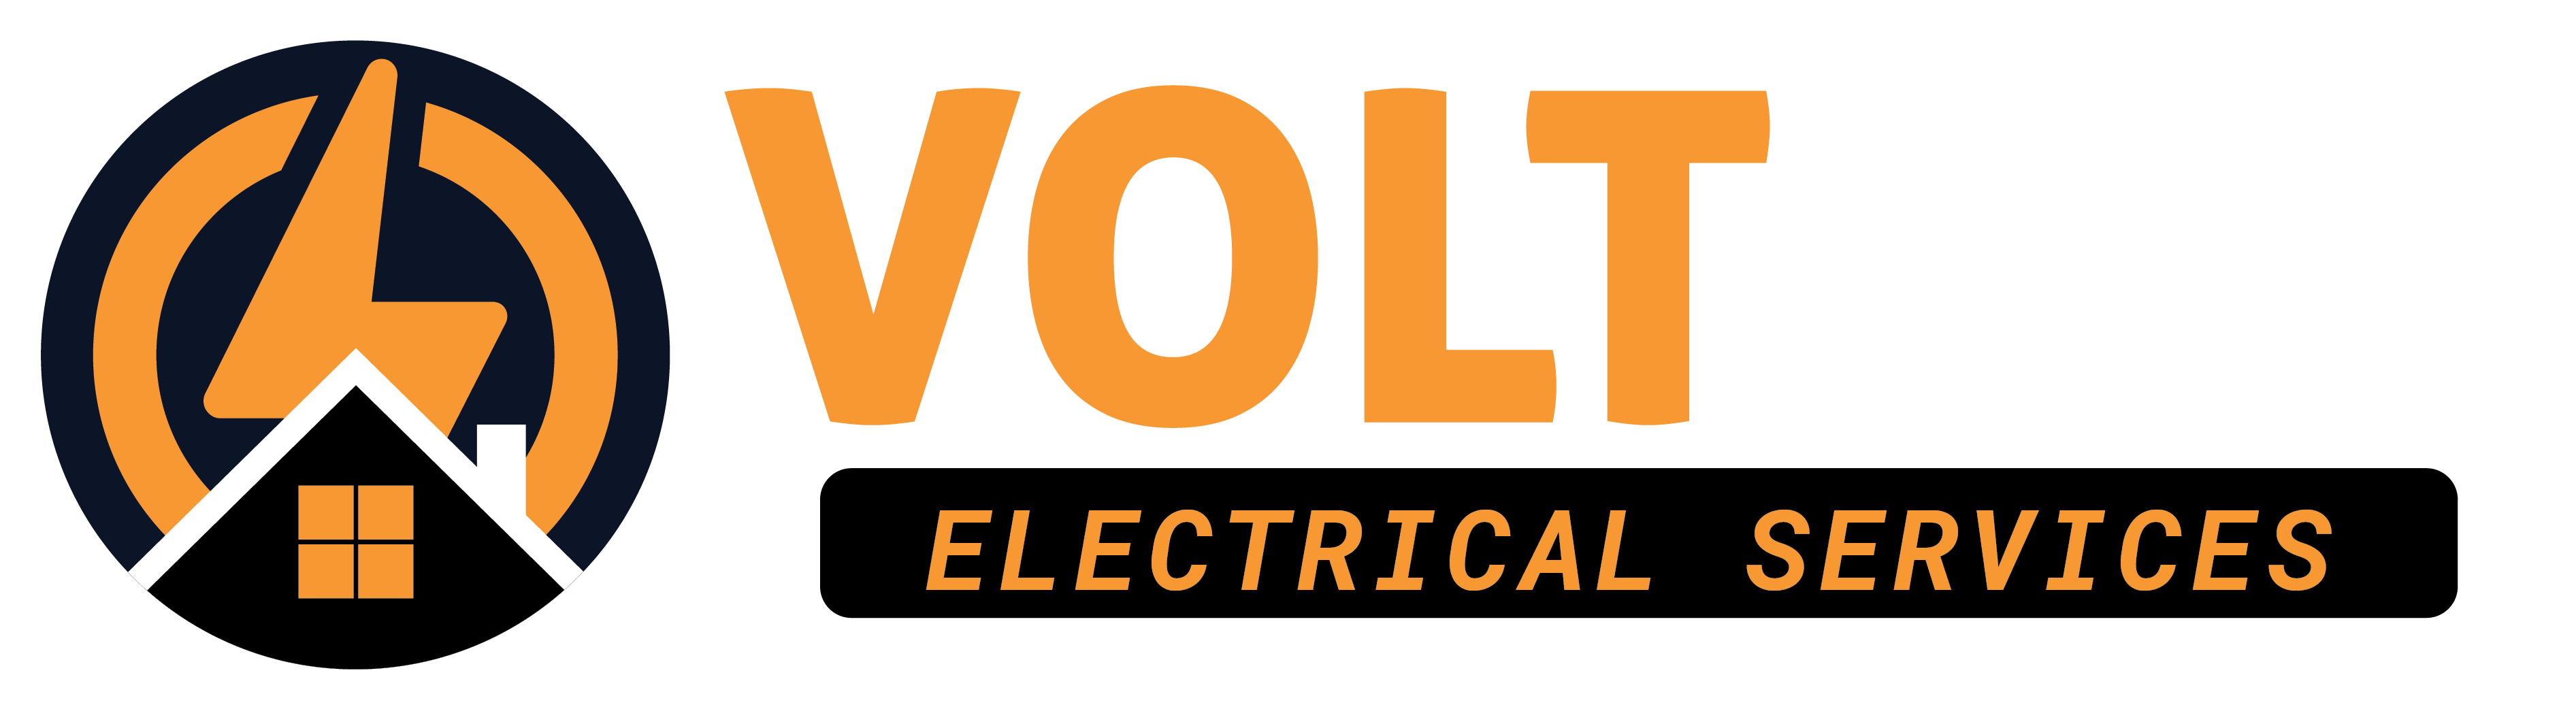 Volt LED Electrical Services Logo